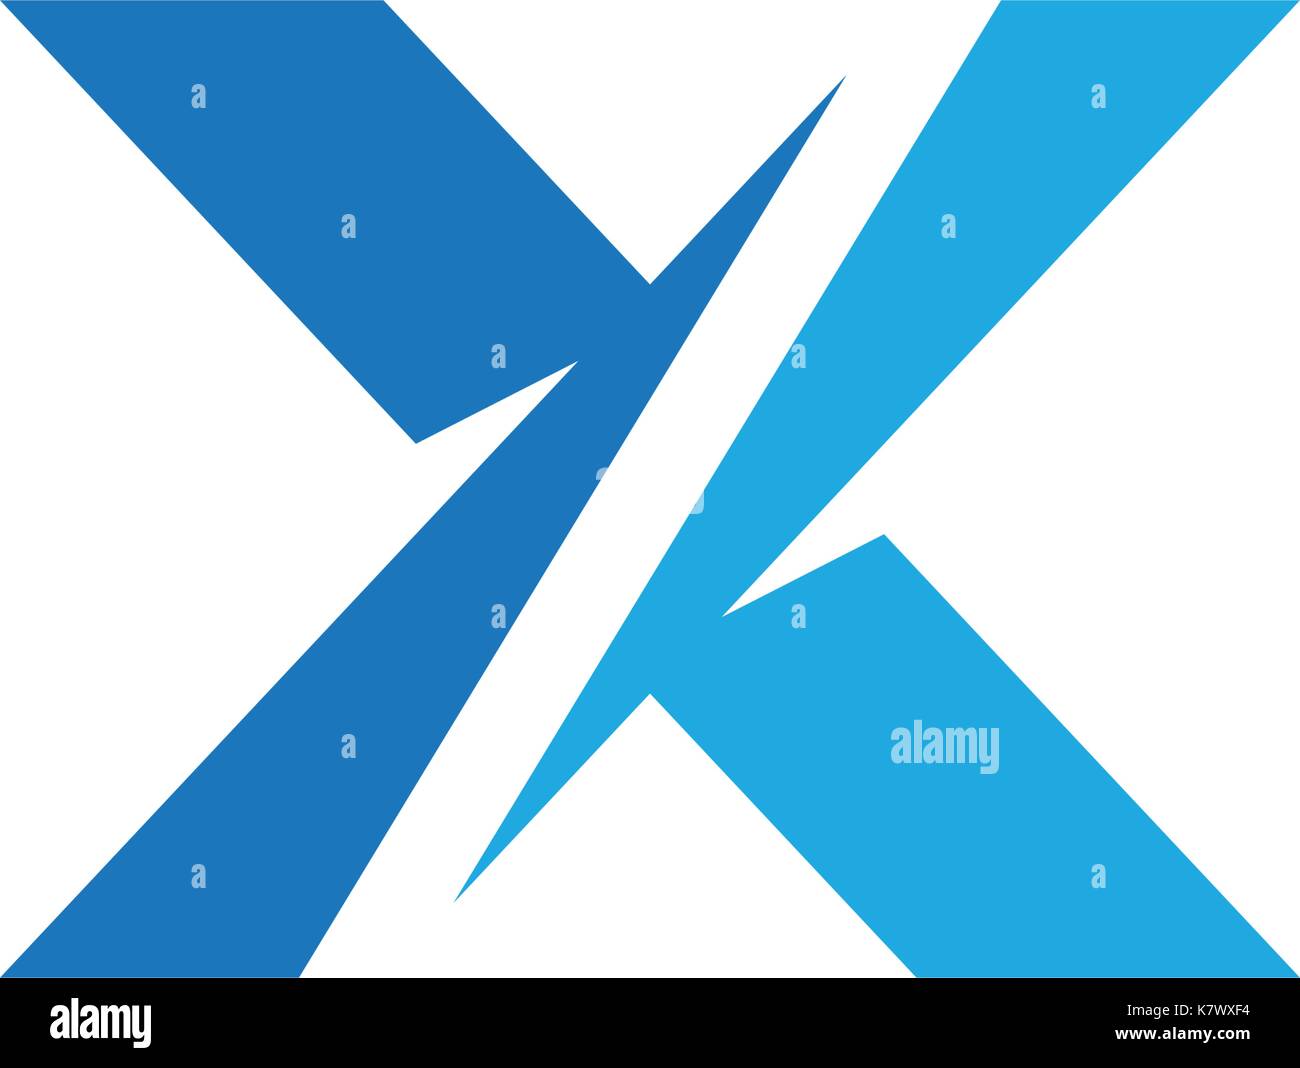 X Letter Logo Template vector icon design Stock Vector